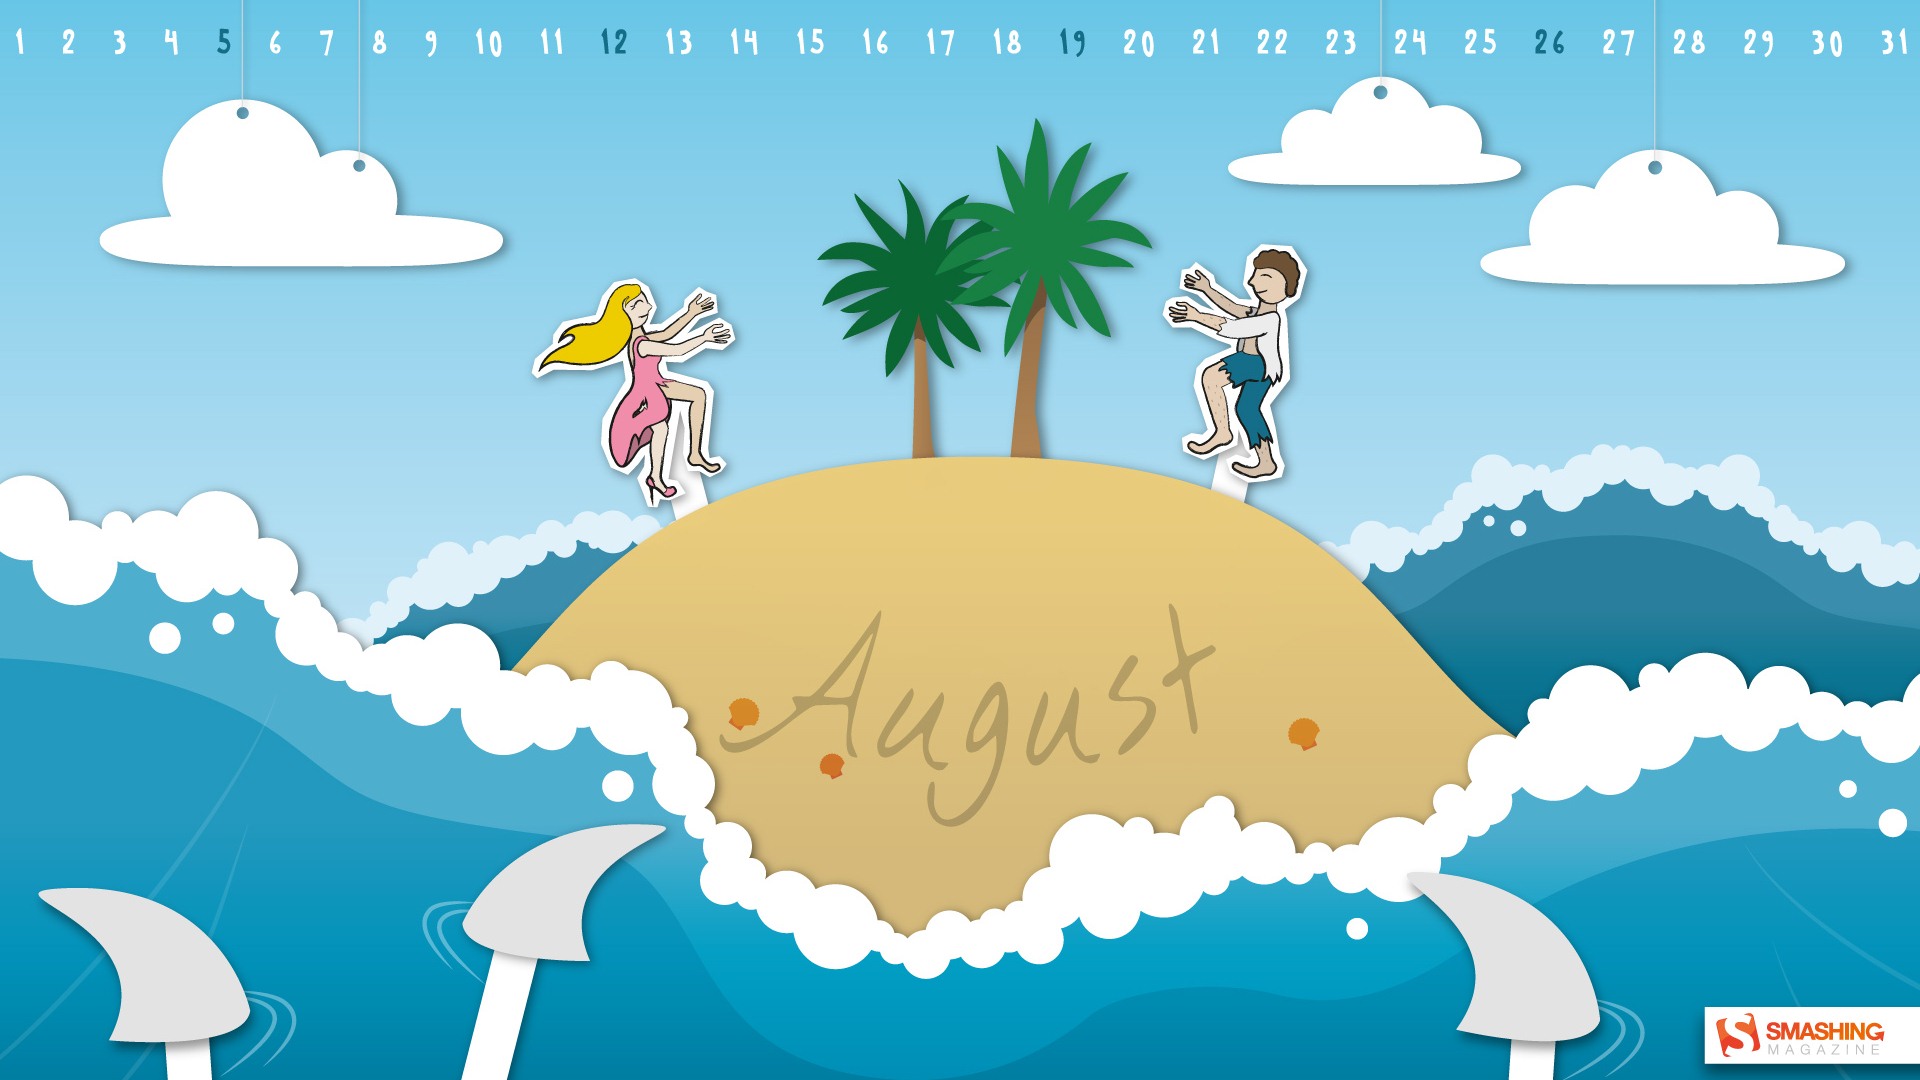 August 2012 Calendar wallpapers (2) #8 - 1920x1080